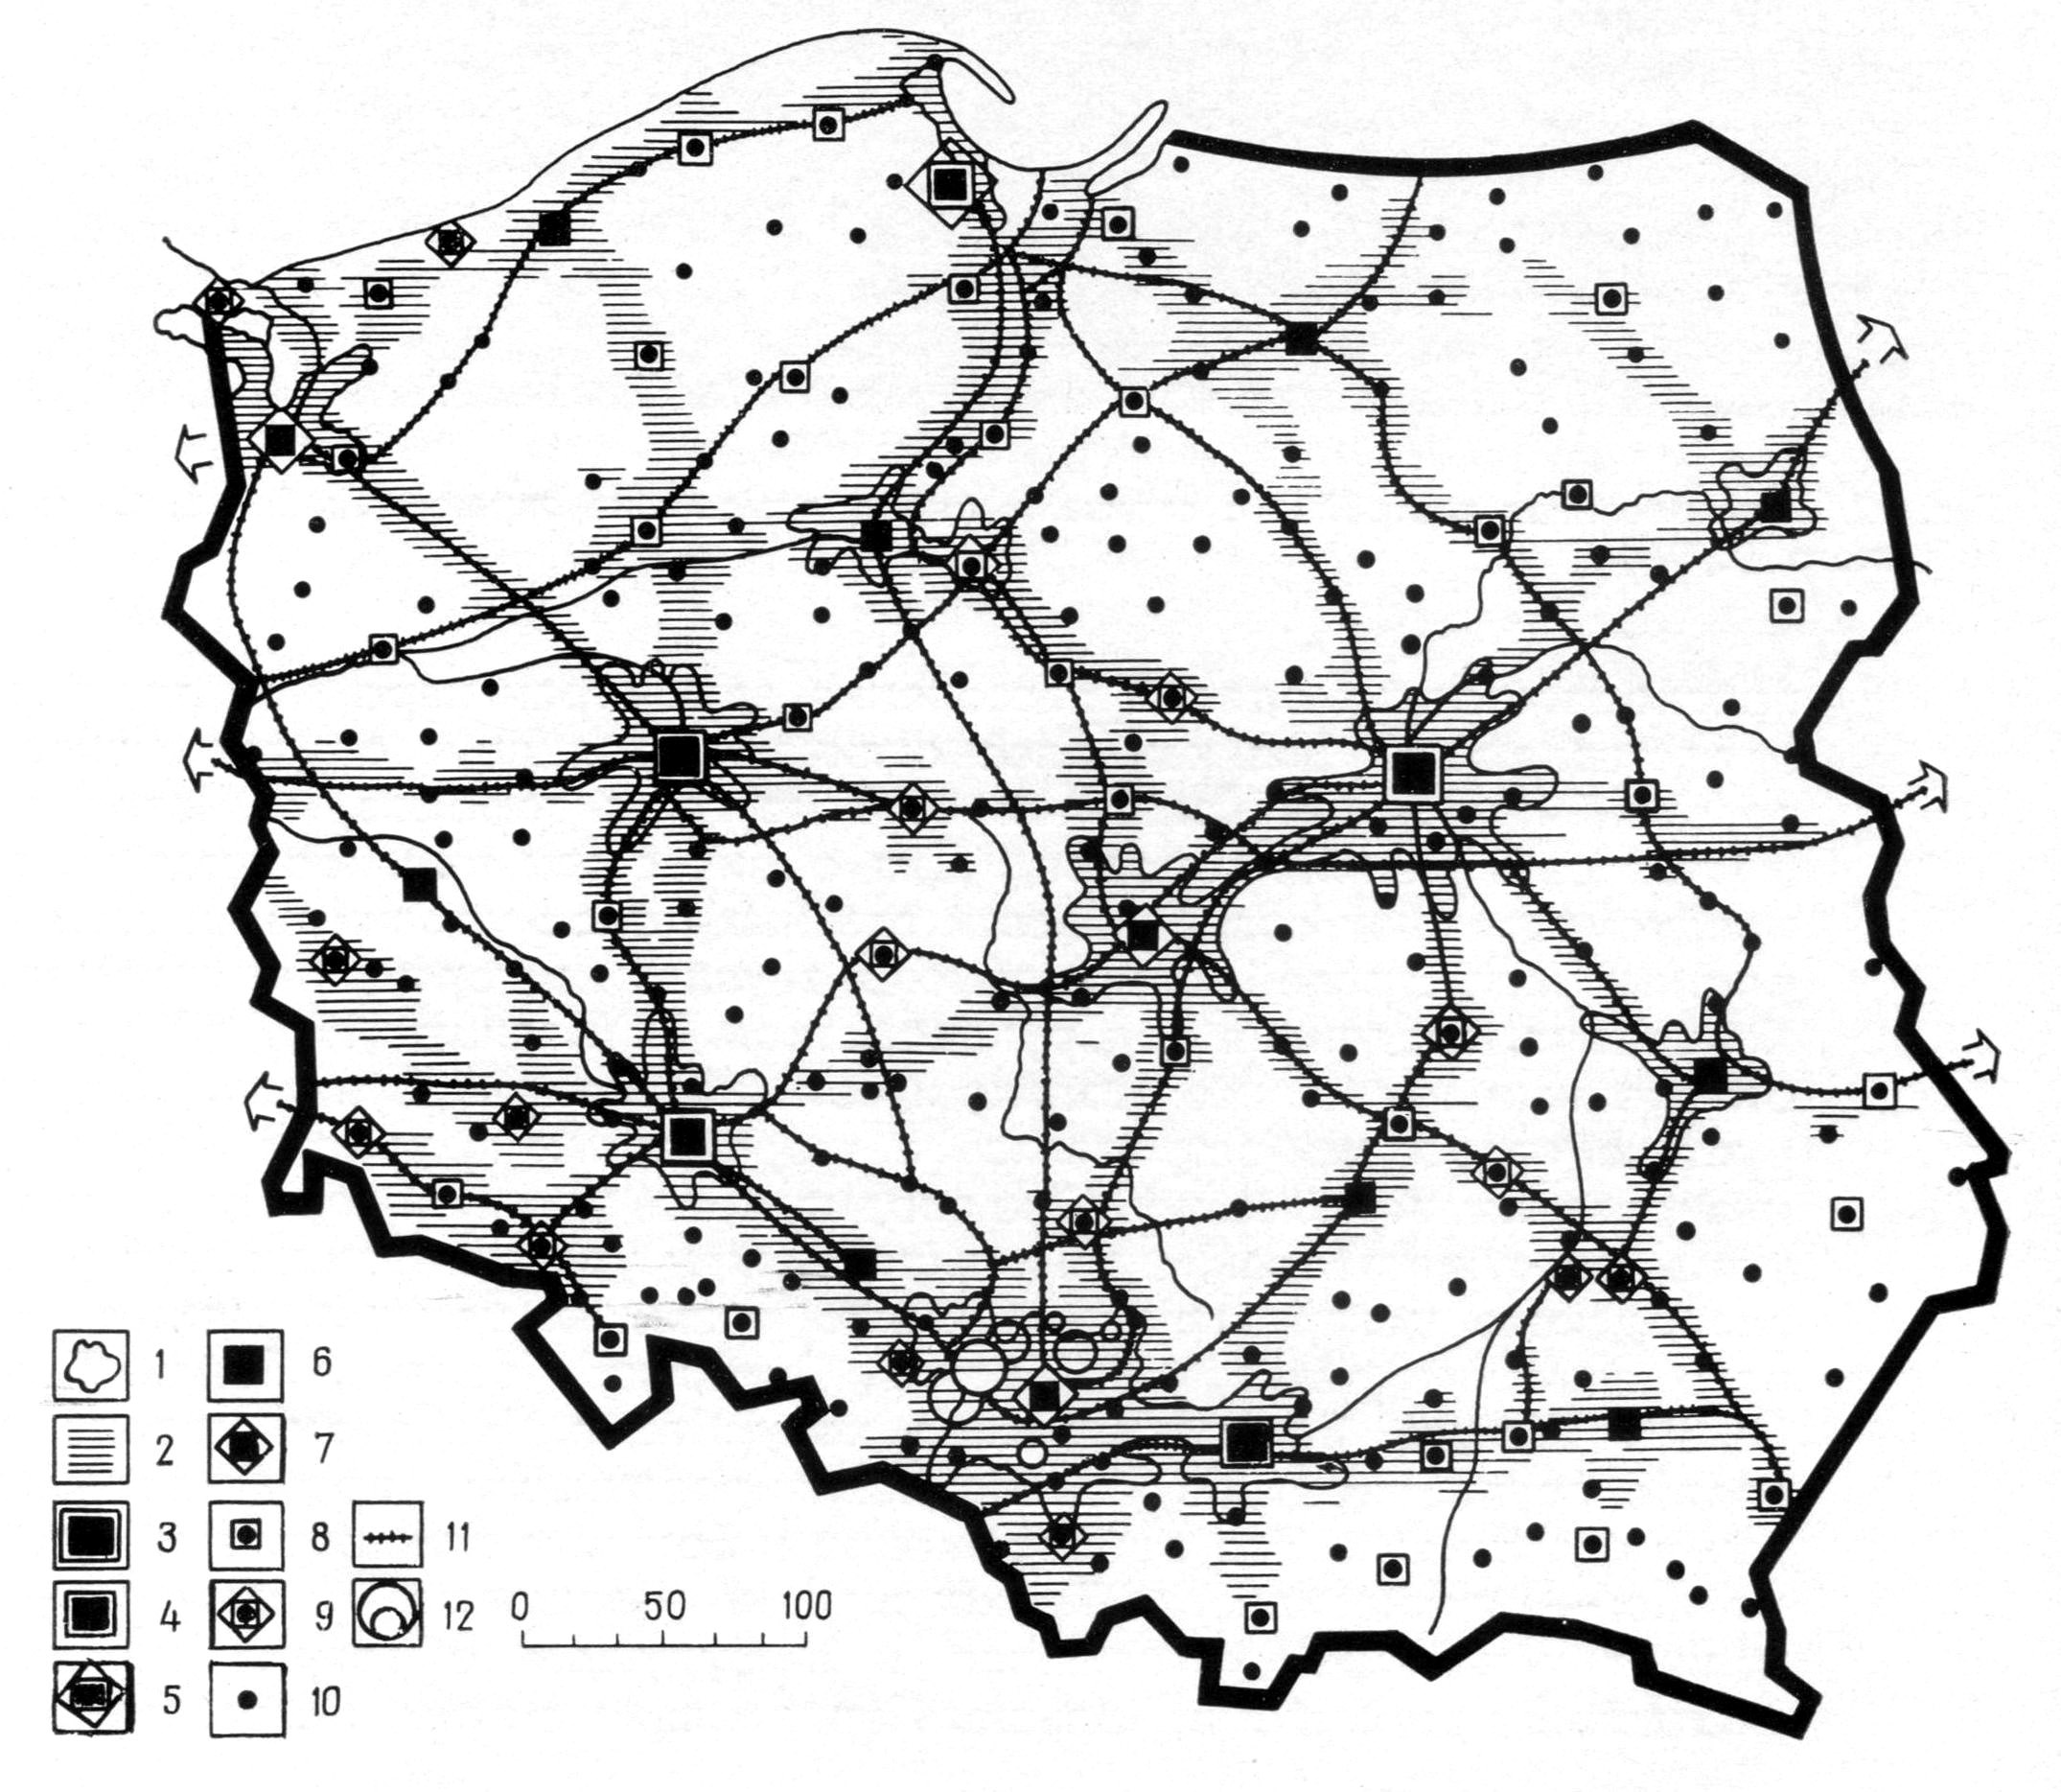 Теоретическая модель сети городов в Польше на 2000 г.